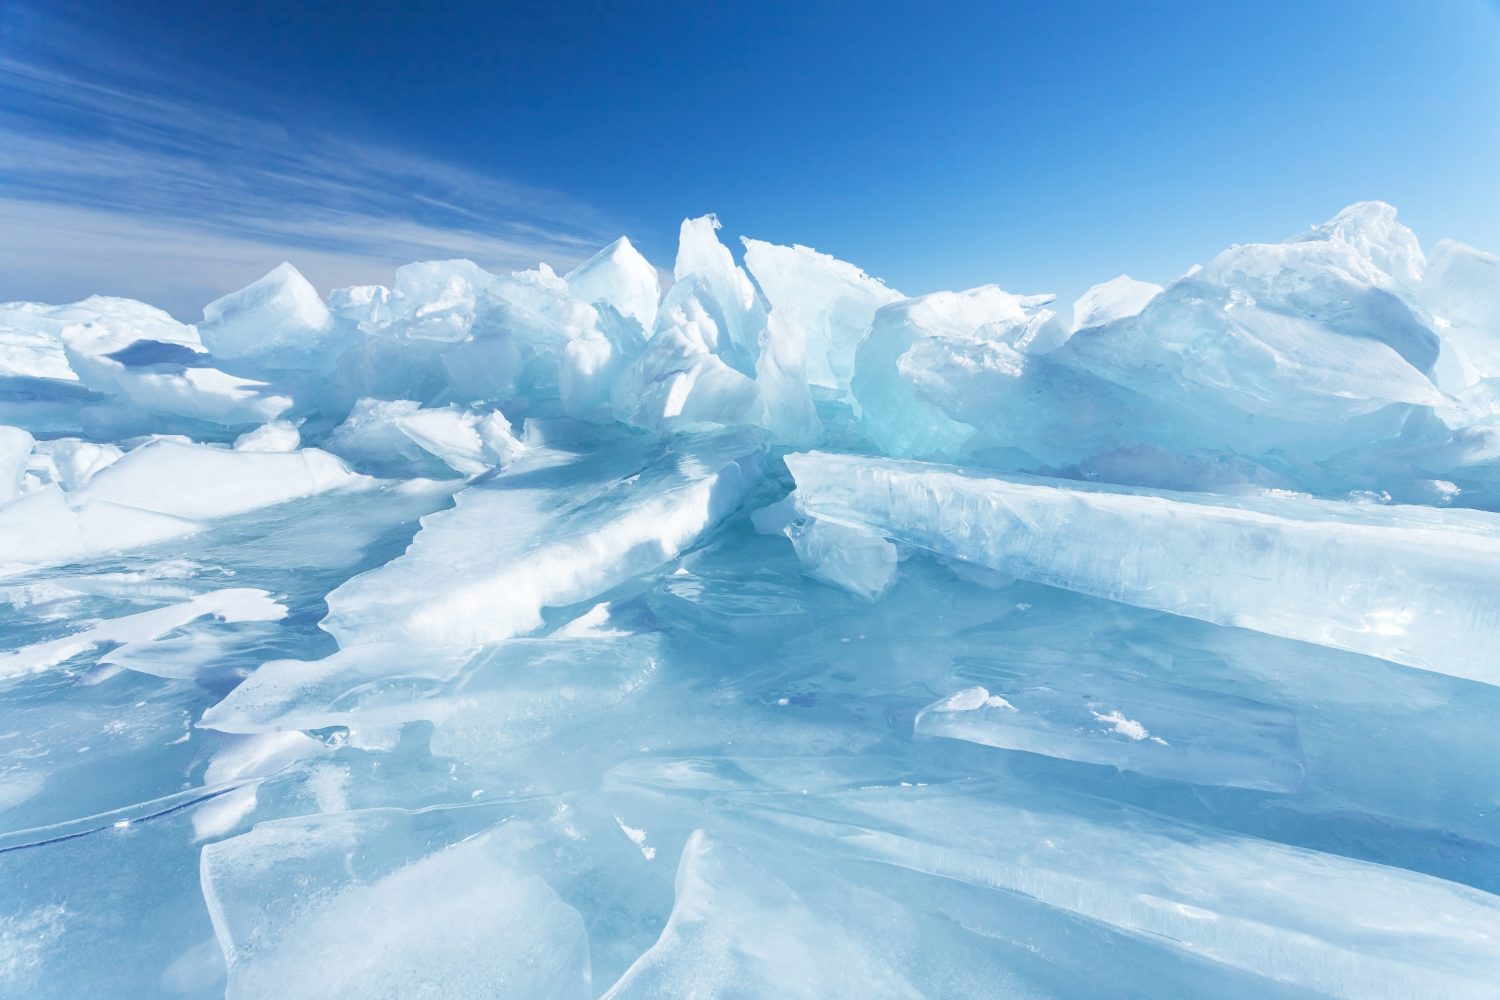 Sfondo naturale invernale con frammenti di ghiaccio blu e cumuli di pezzi di ghiaccio sul lago Baikal in una giornata gelida e soleggiata.  Sfondo freddo astratto, mock up.  Ambiente duro e senza vita